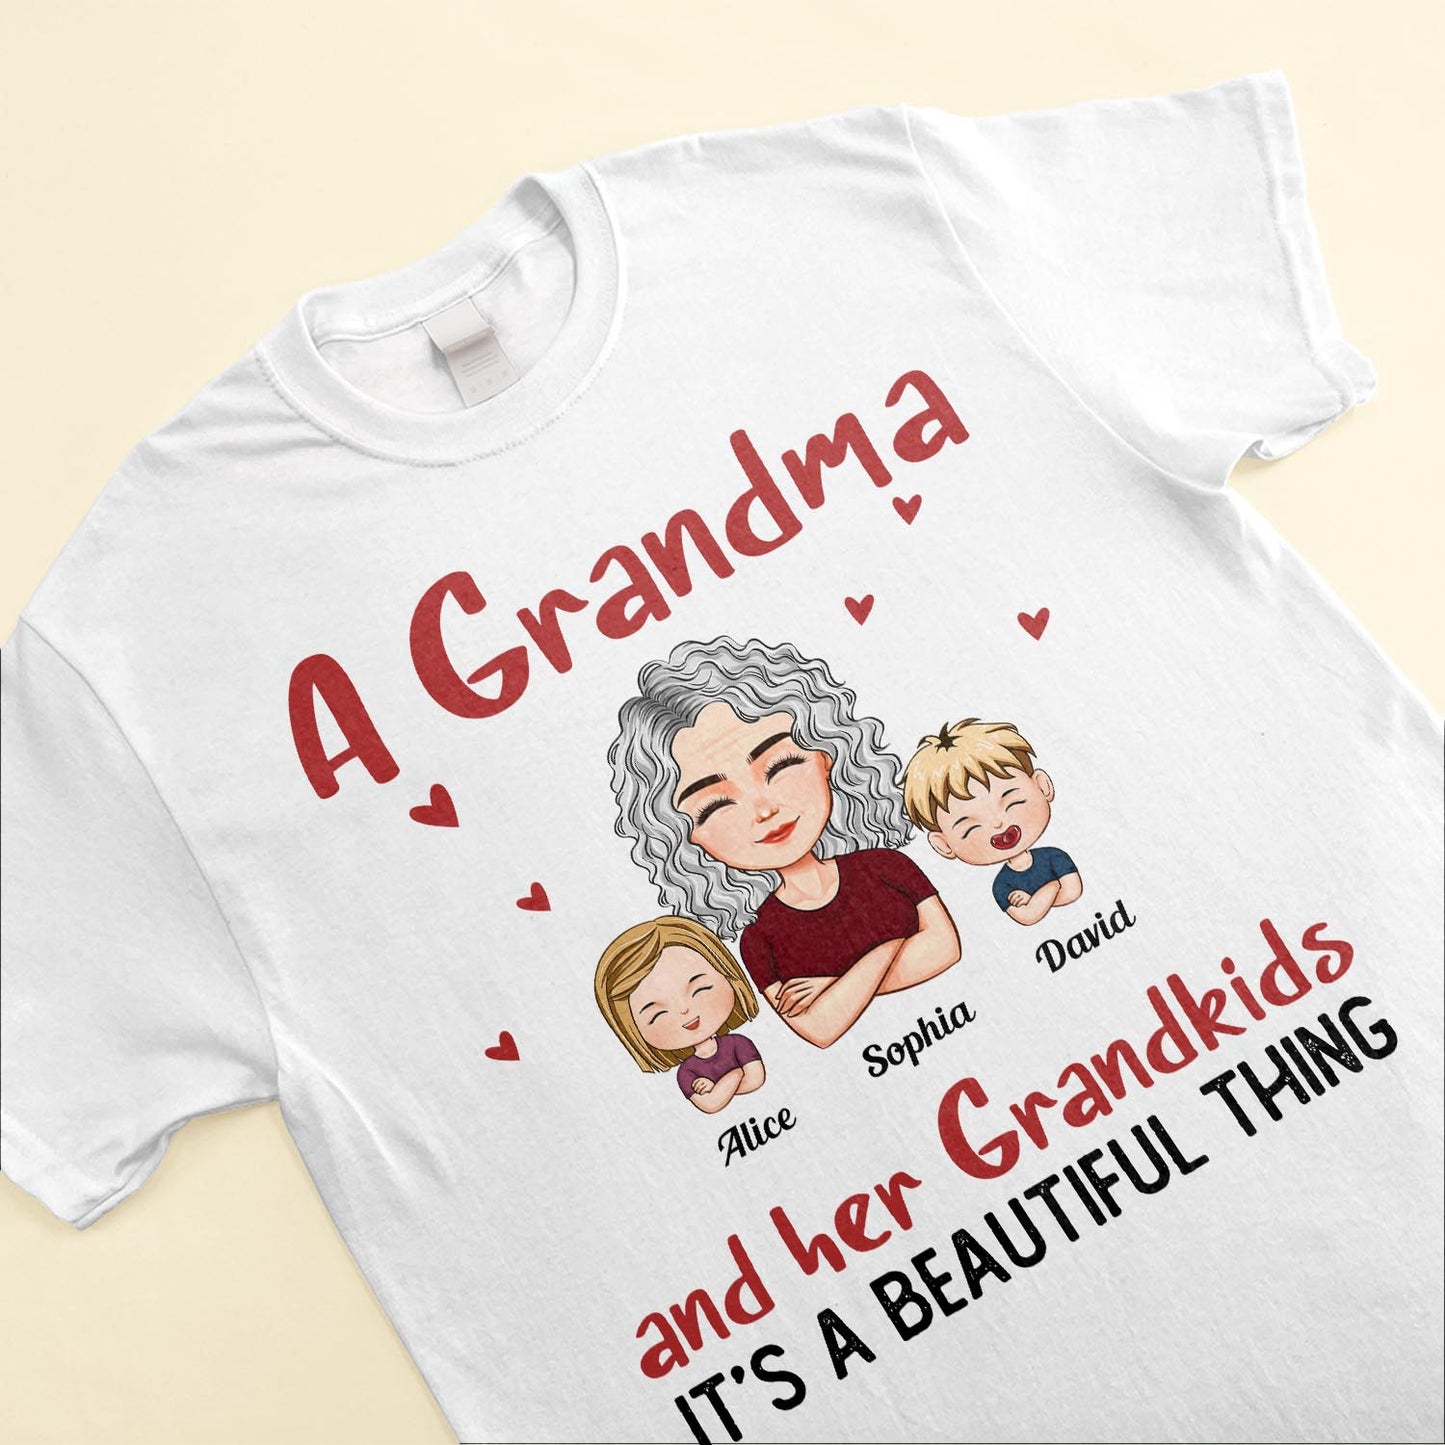 Grandma And Grandkids Beautiful Thing - Personalized Shirt